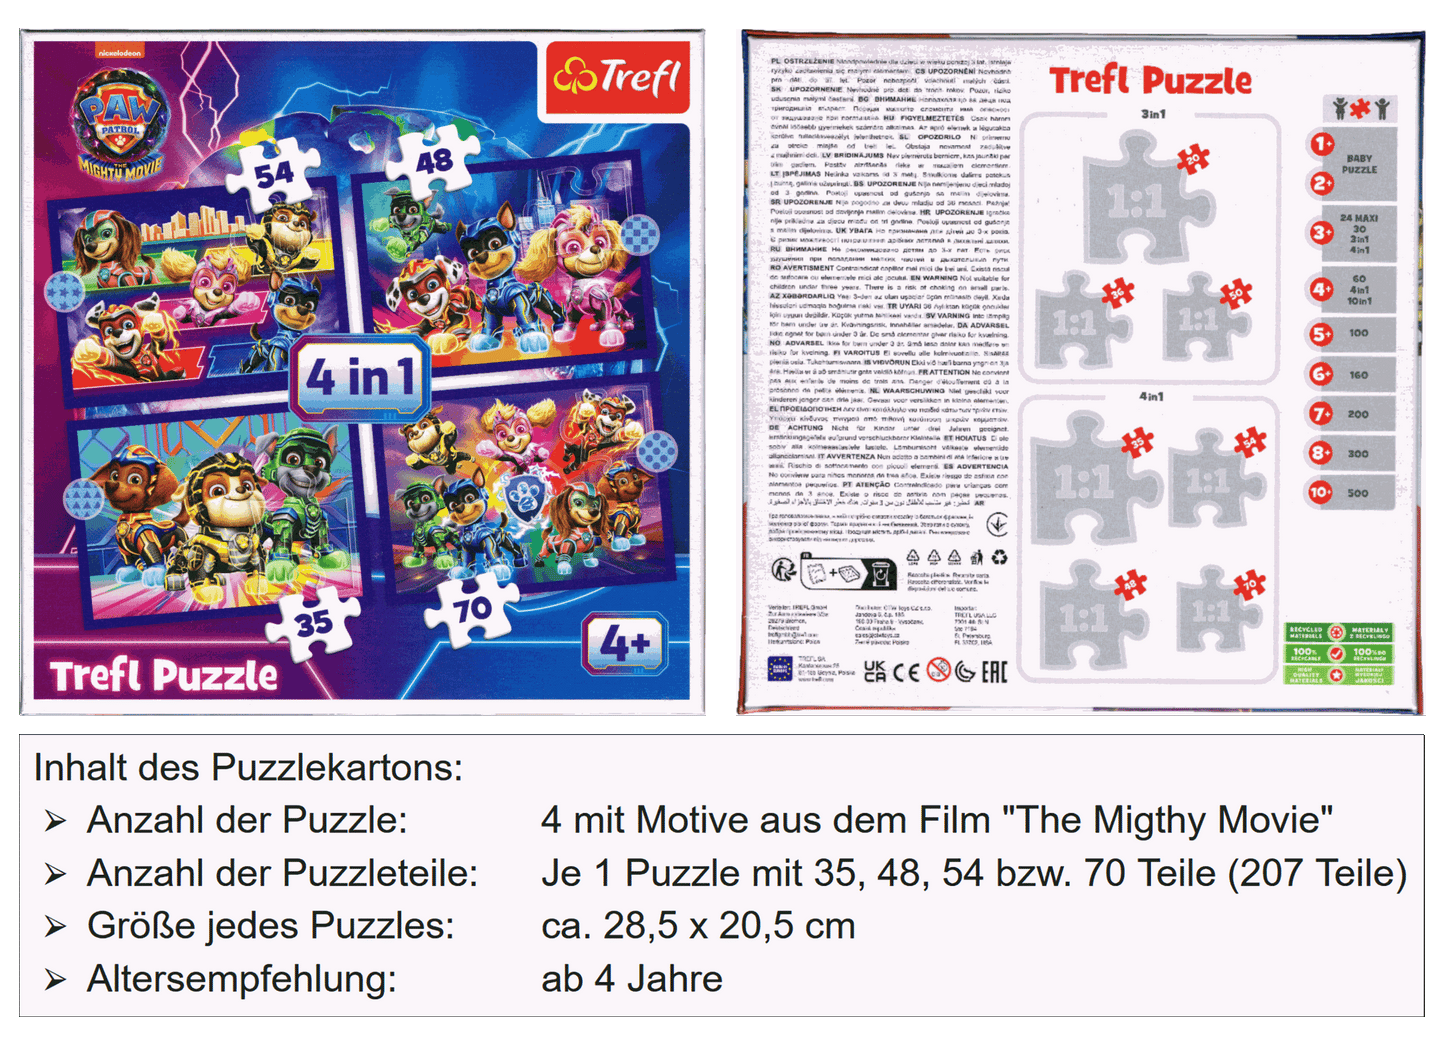 PAW Patrol The Mighty Movie 4 in 1 Puzzle von Trefl 34621 ab 4 Jahre 285x205 mm